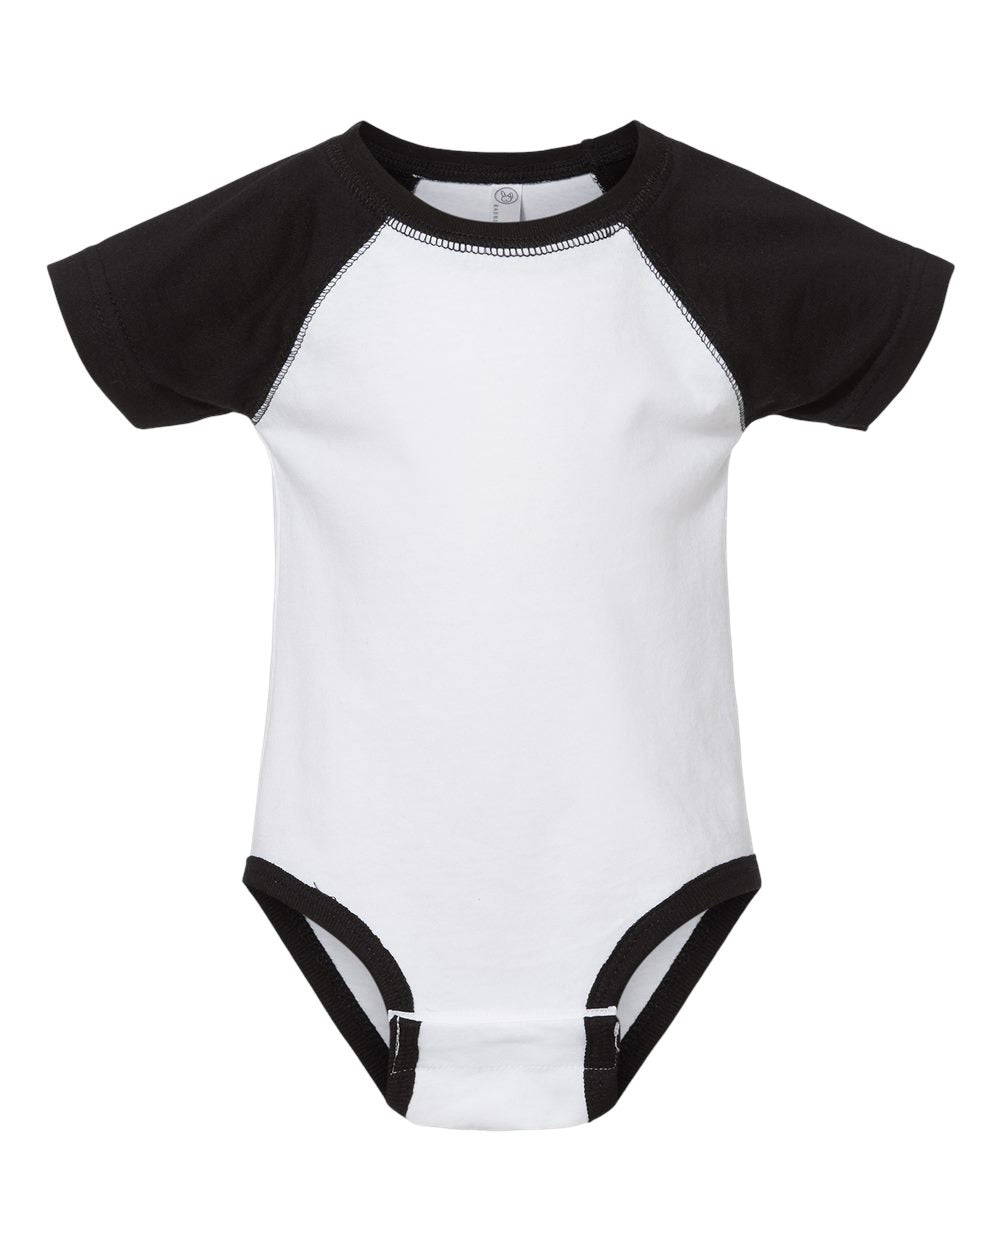 rabbit skins infant baseball jersey bodysuit onesie white solid black